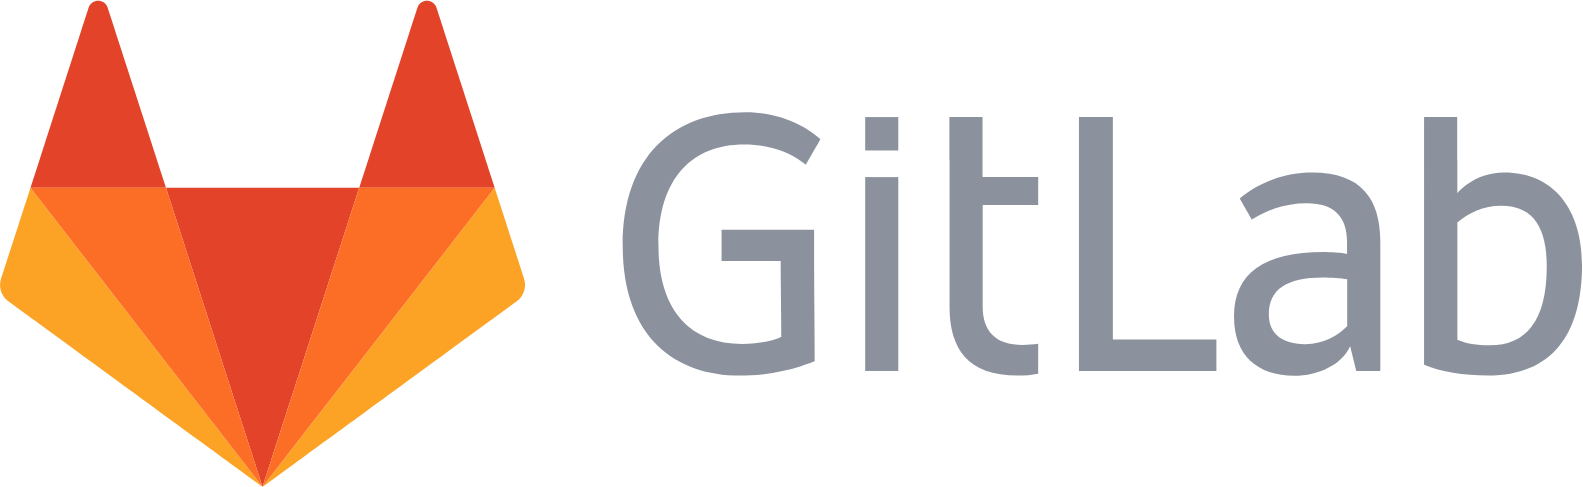 GitLab logo large (transparent PNG)